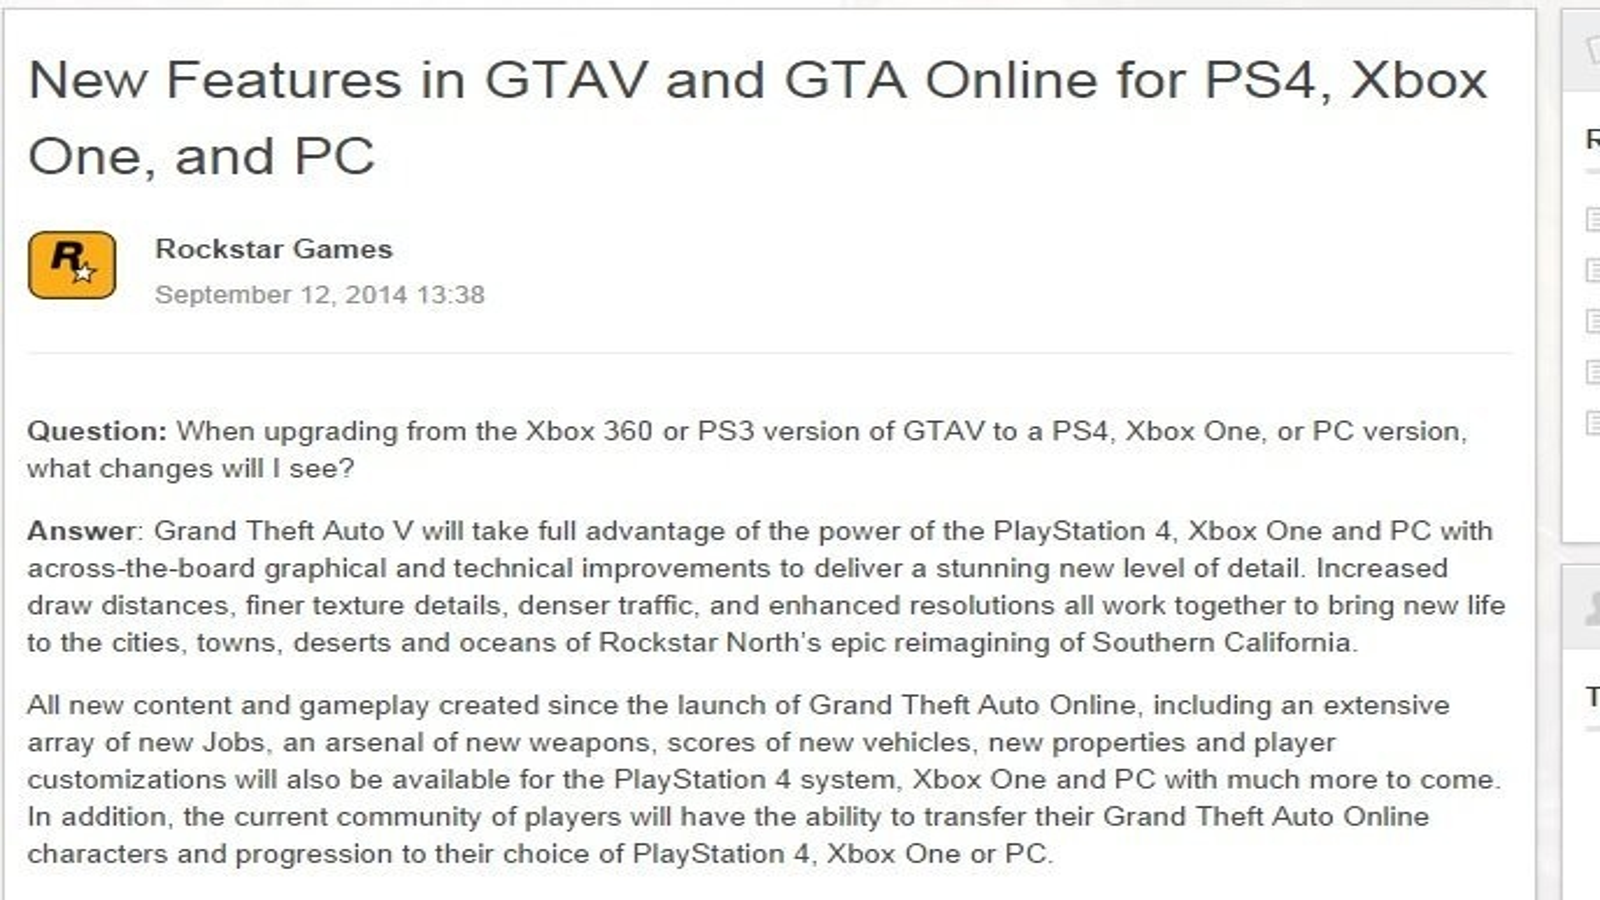 GTA V Online Brasil (PC, XBOX ONE e PS4)